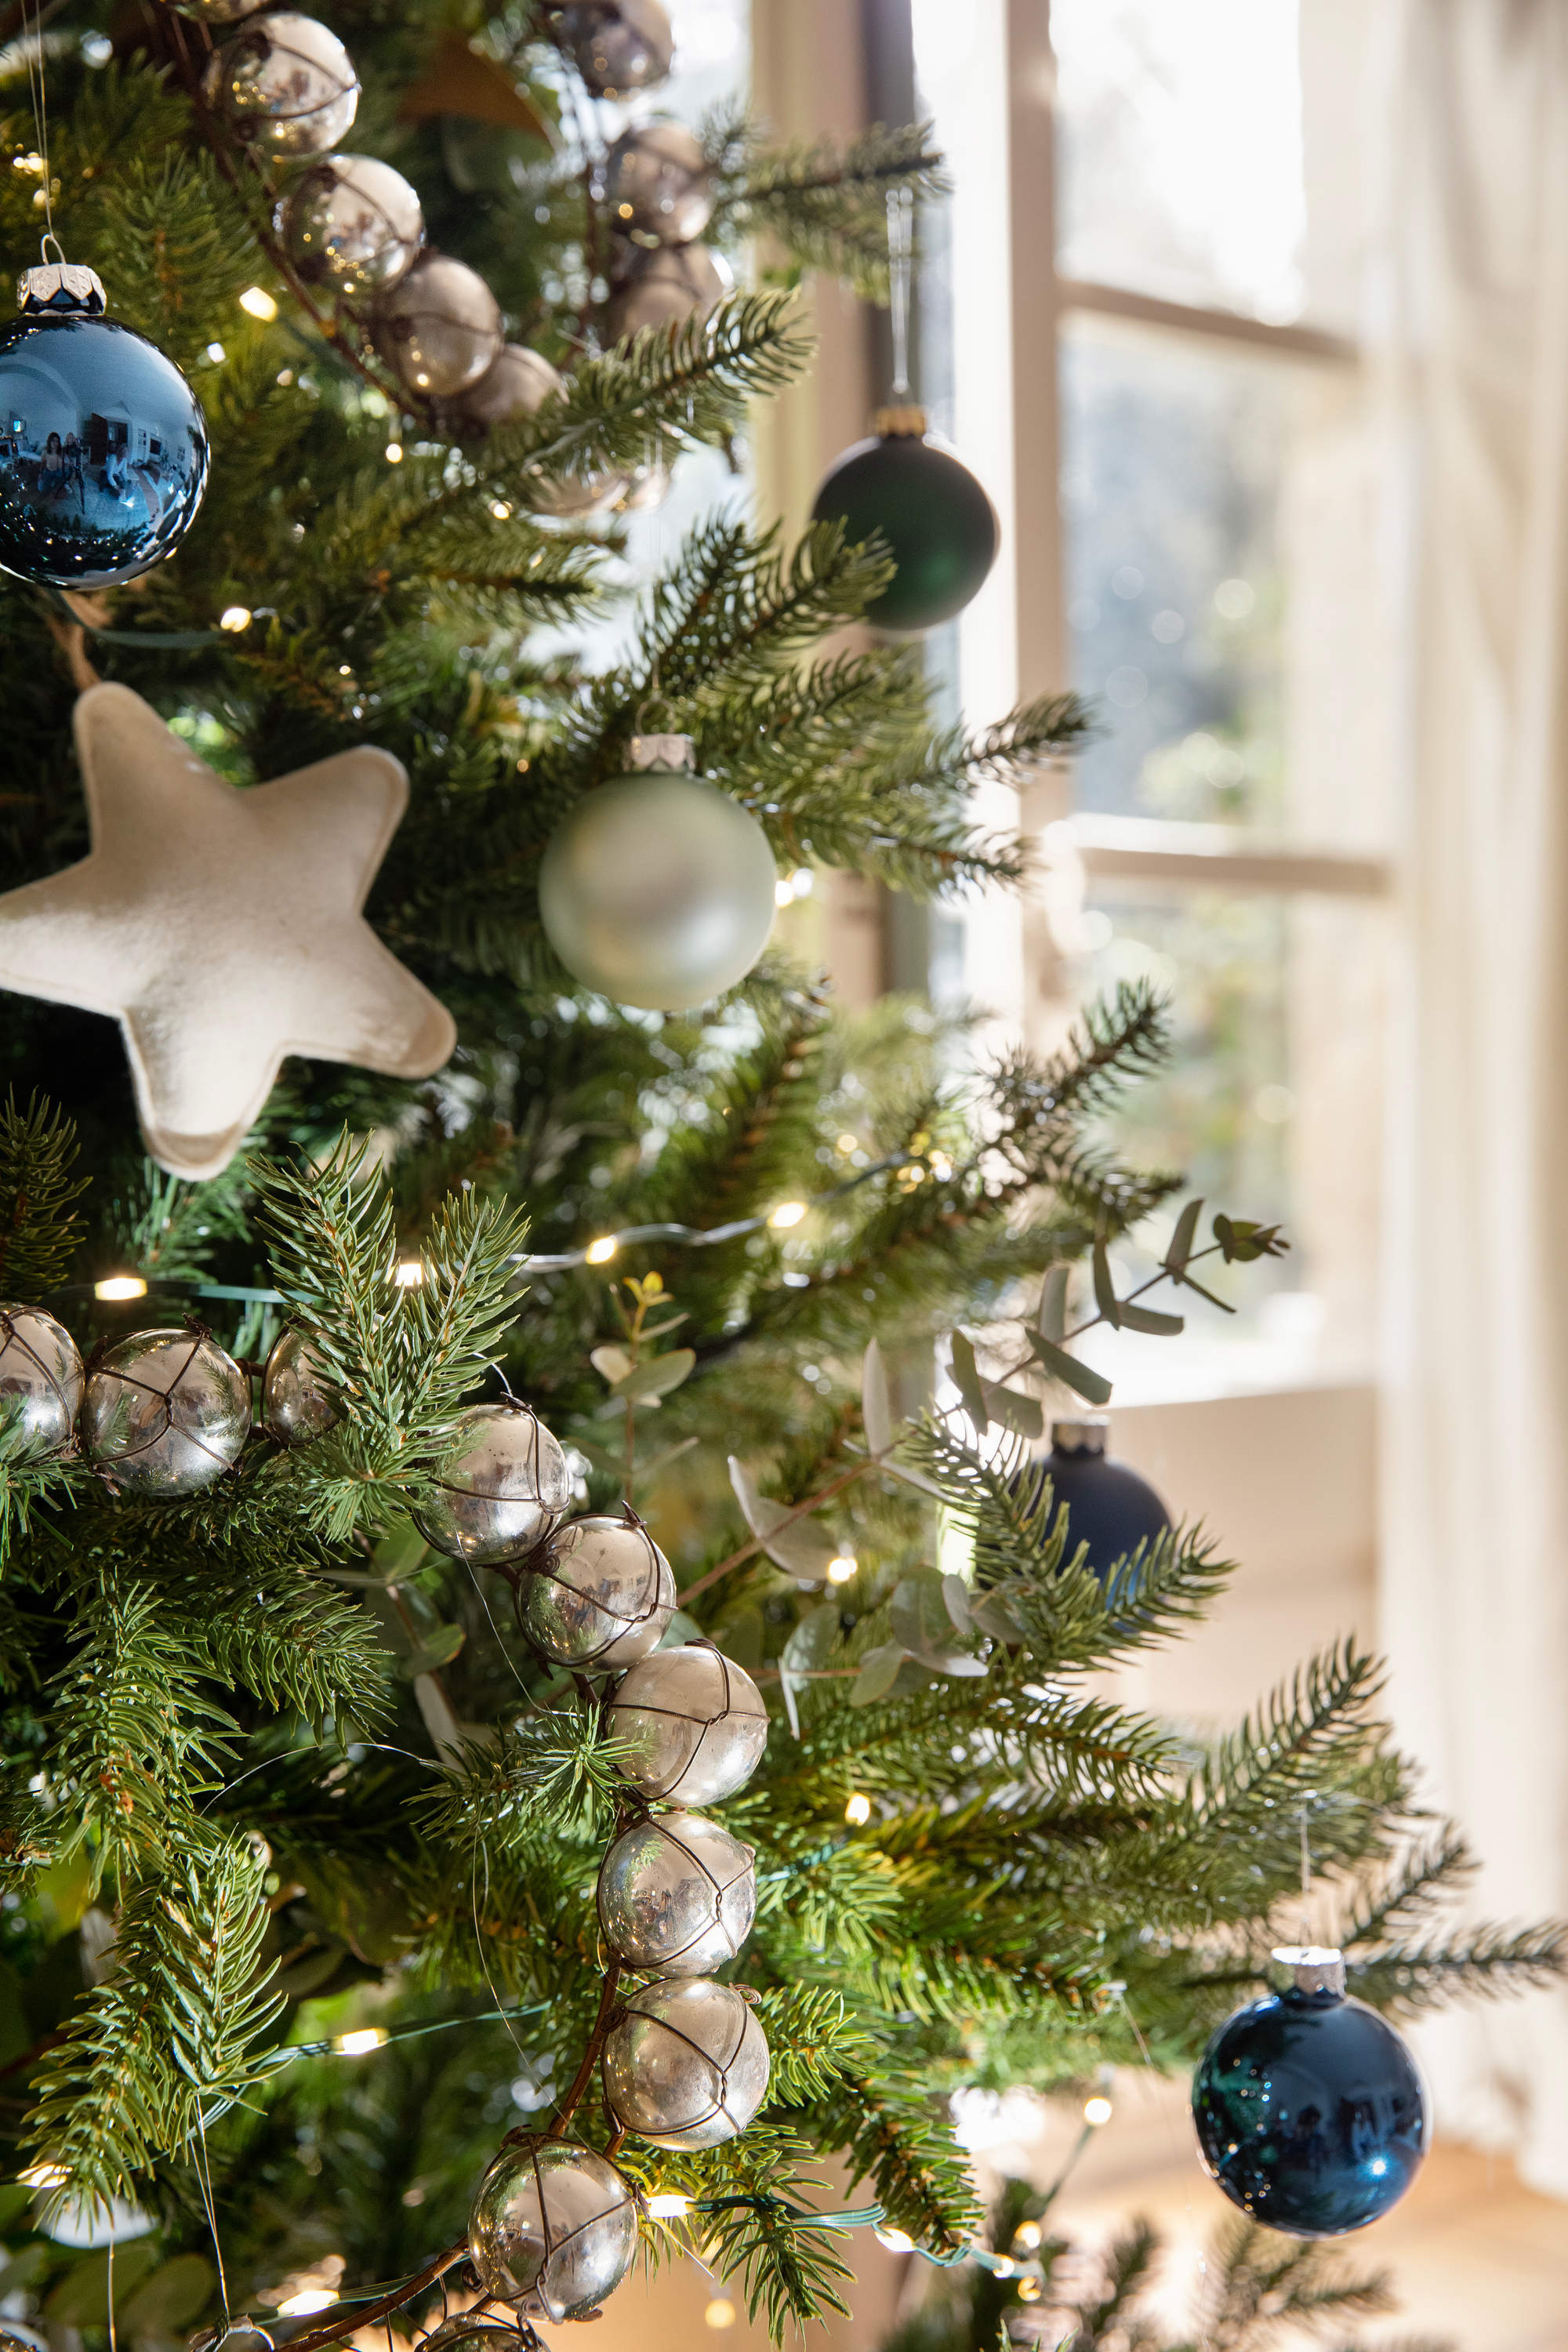 Árbol de Navidad decorado en tonos plateados y azules.